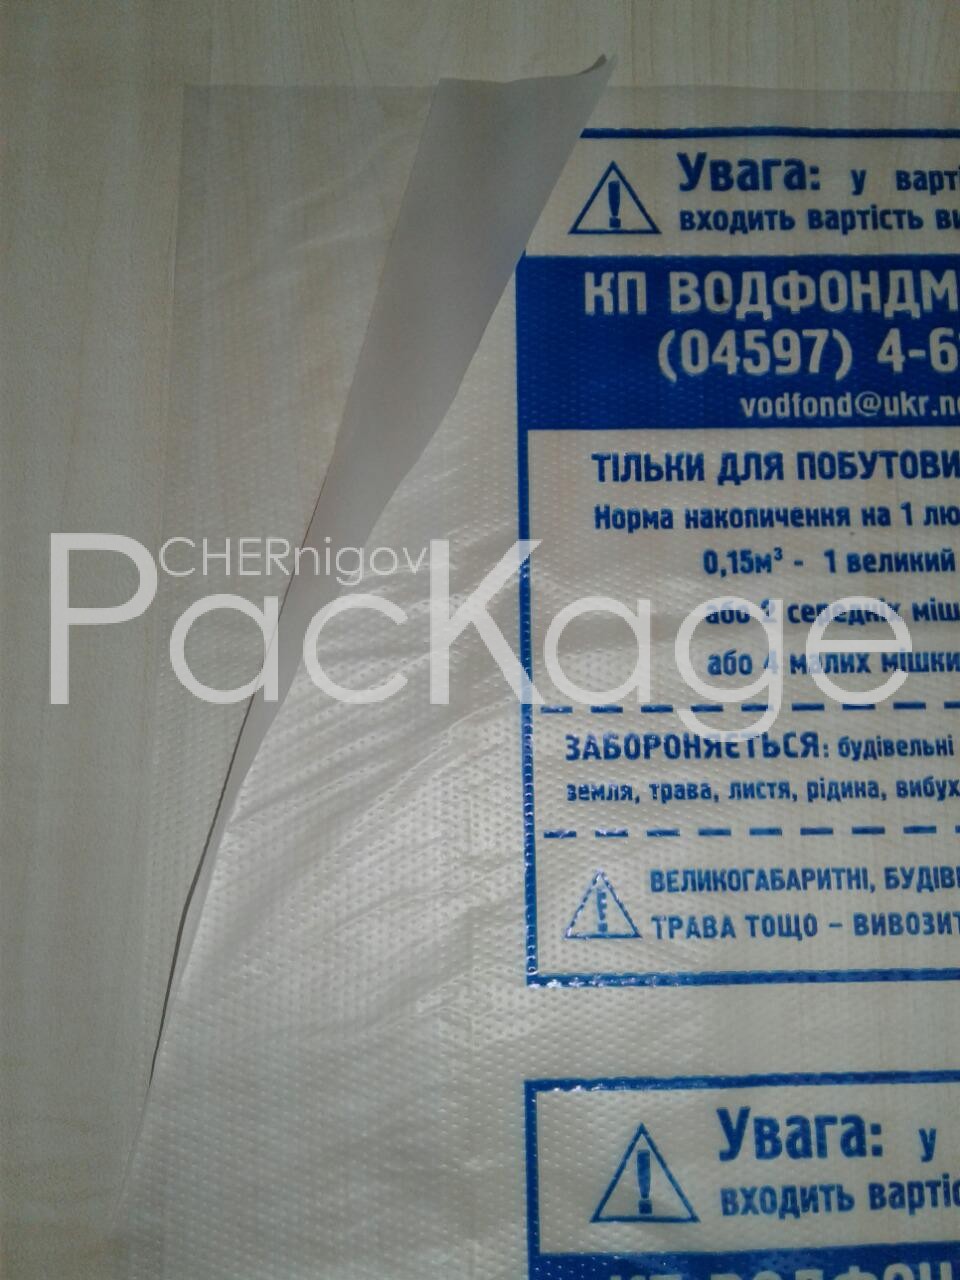 Полиэтиленовый рукав как упаковочный материал Chernigov Package - Photo пнд 30 мкм 35х48_ф7